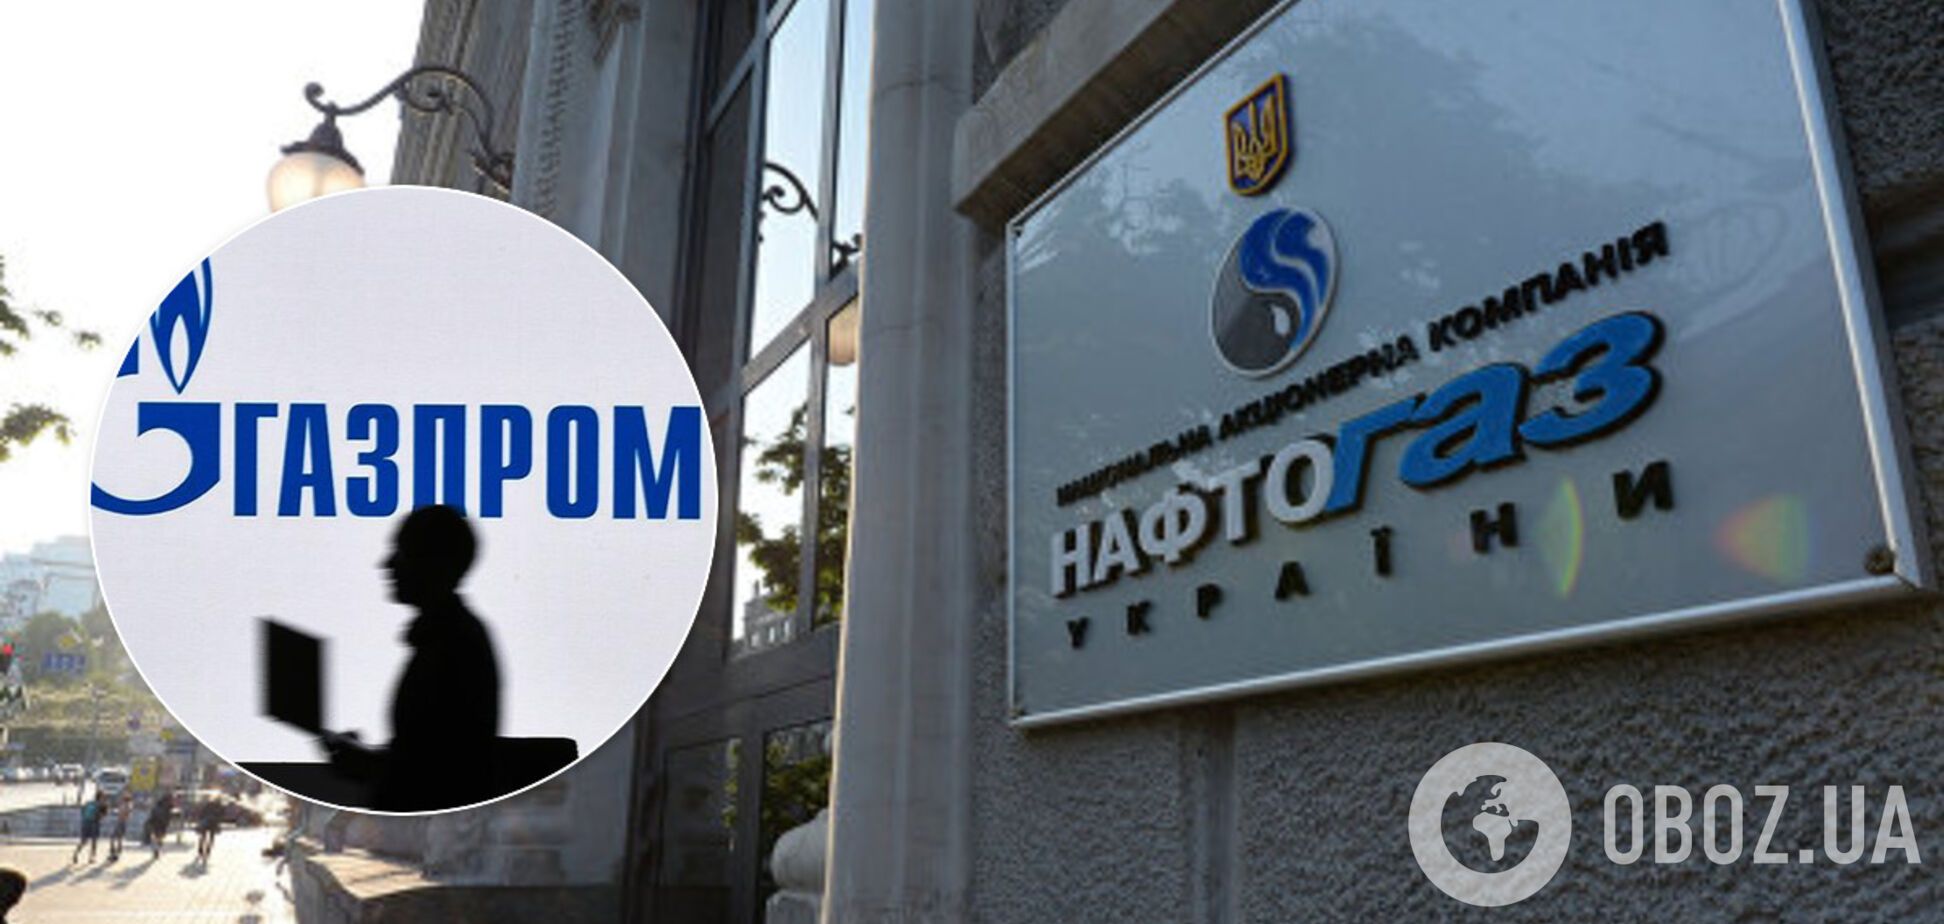 'Нафтогаз' подготовил новые претензии к 'Газпрому' на $17 млрд